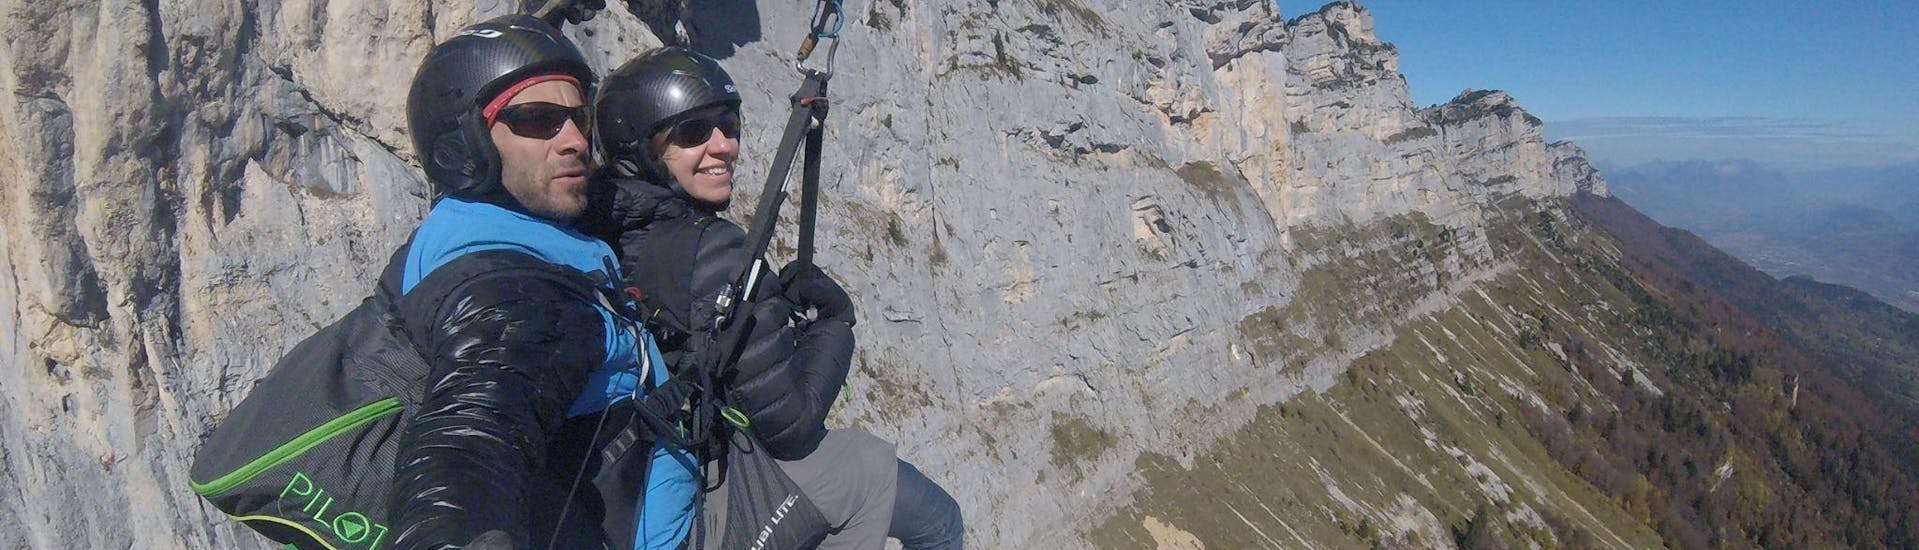 Akrobatik Tandem Paragliding (ab 13 J.) - Massif de la Chartreuse.